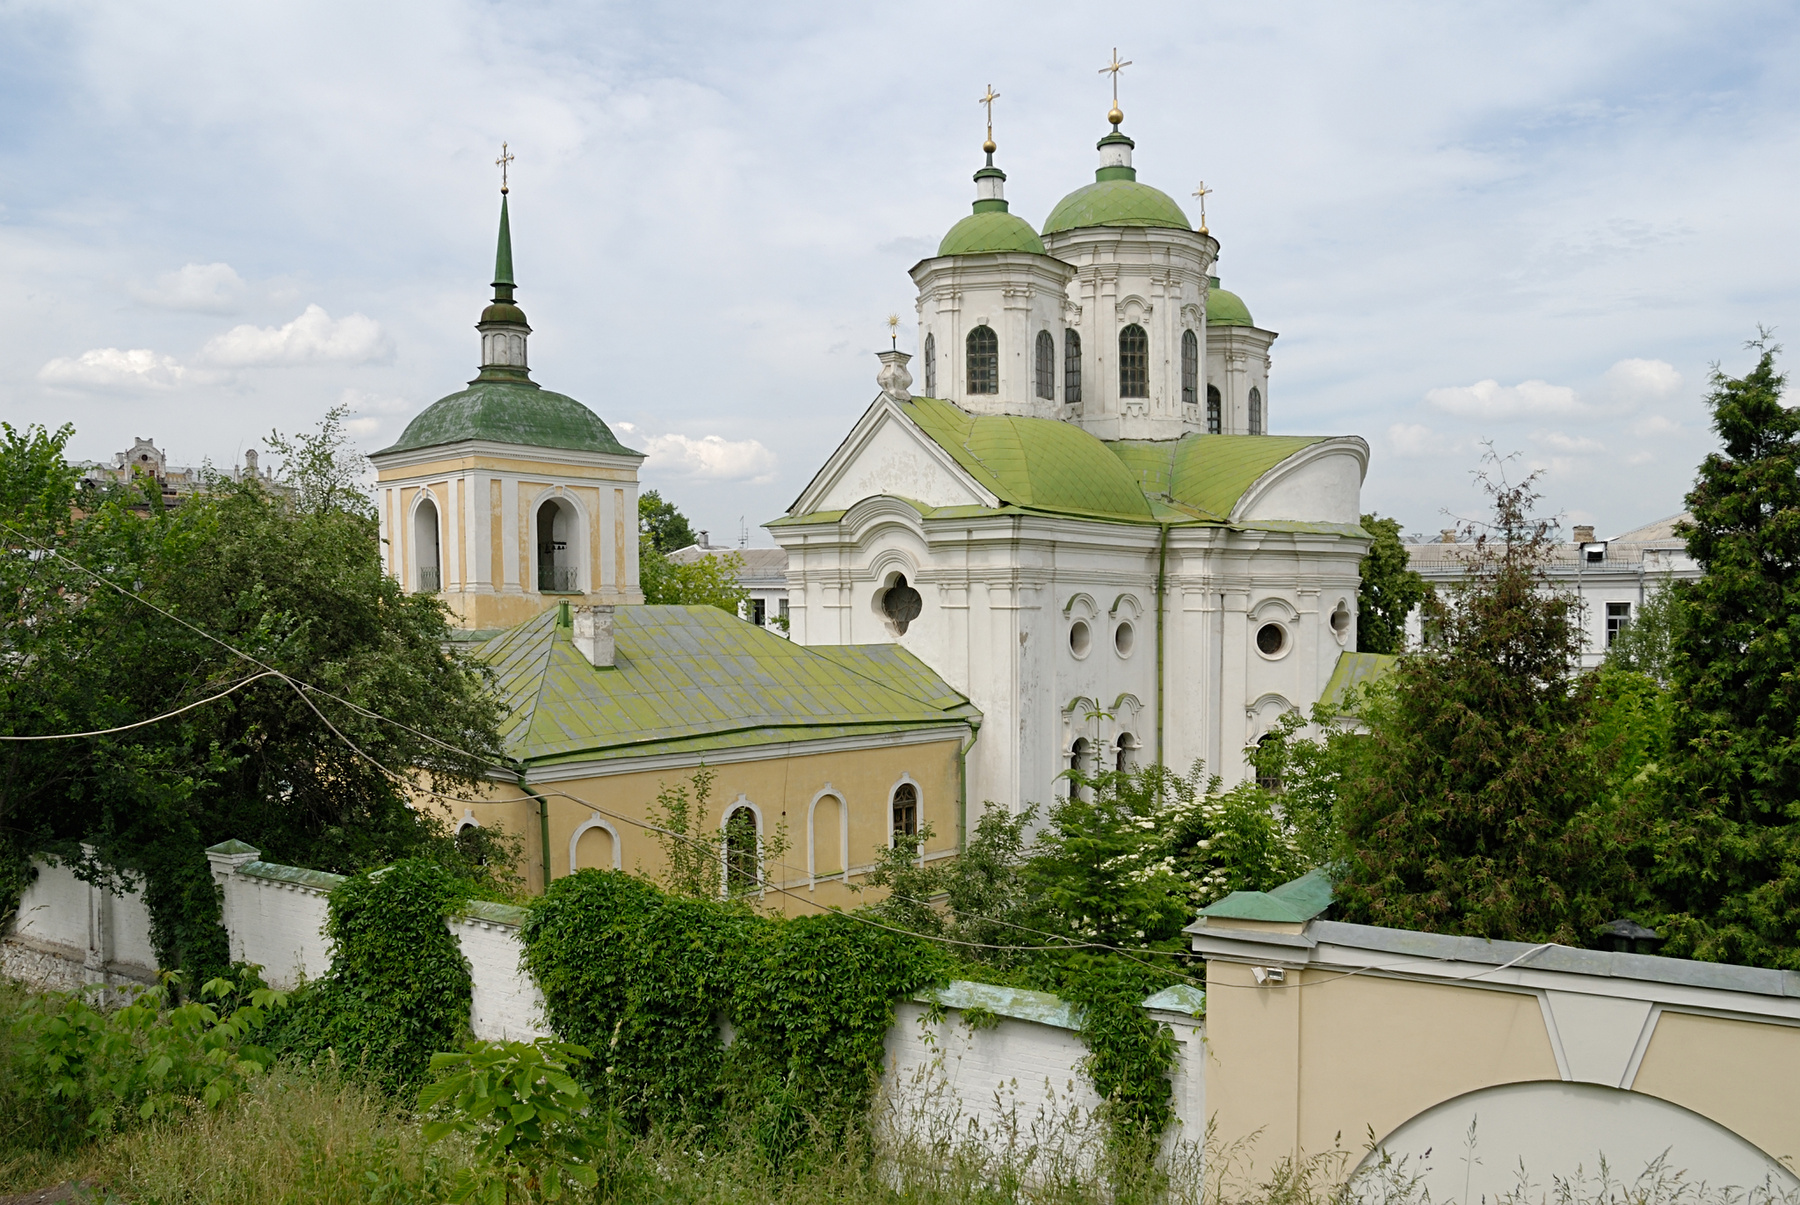 Покровская церковь с колокольней,1766 г. Украина Киев Покровская церковь храм